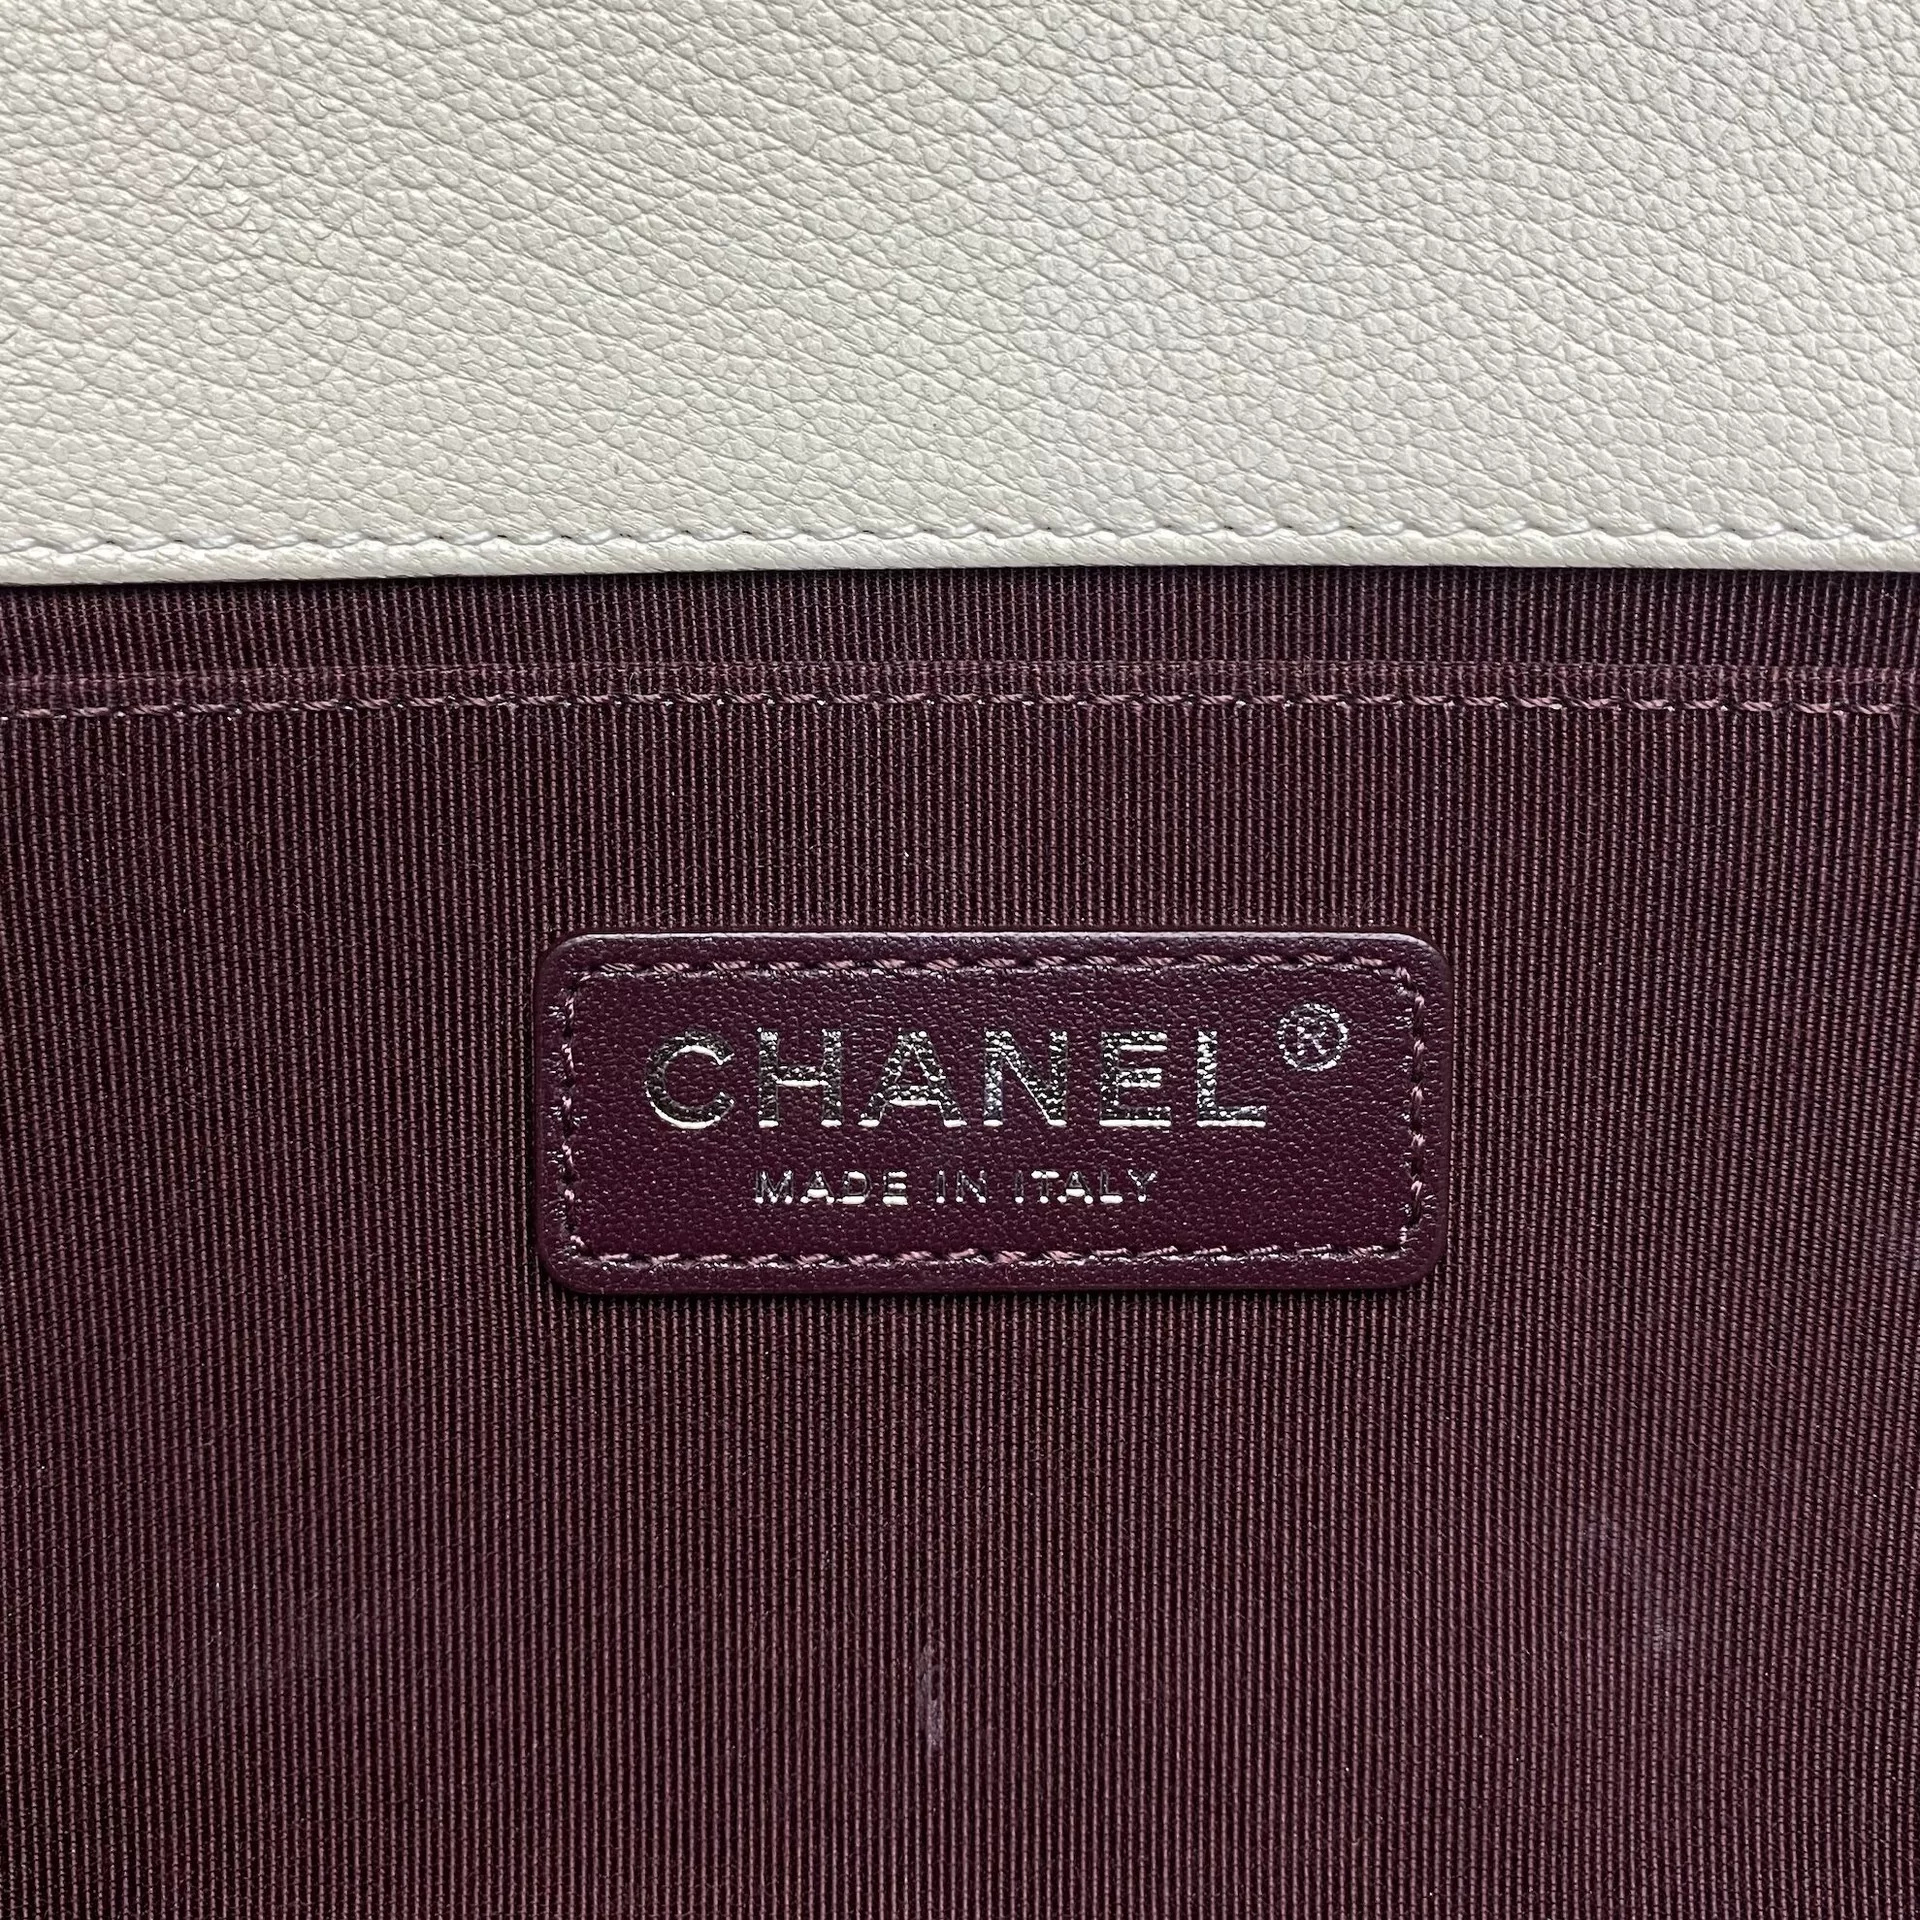 Bolsa Chanel Boy Creme